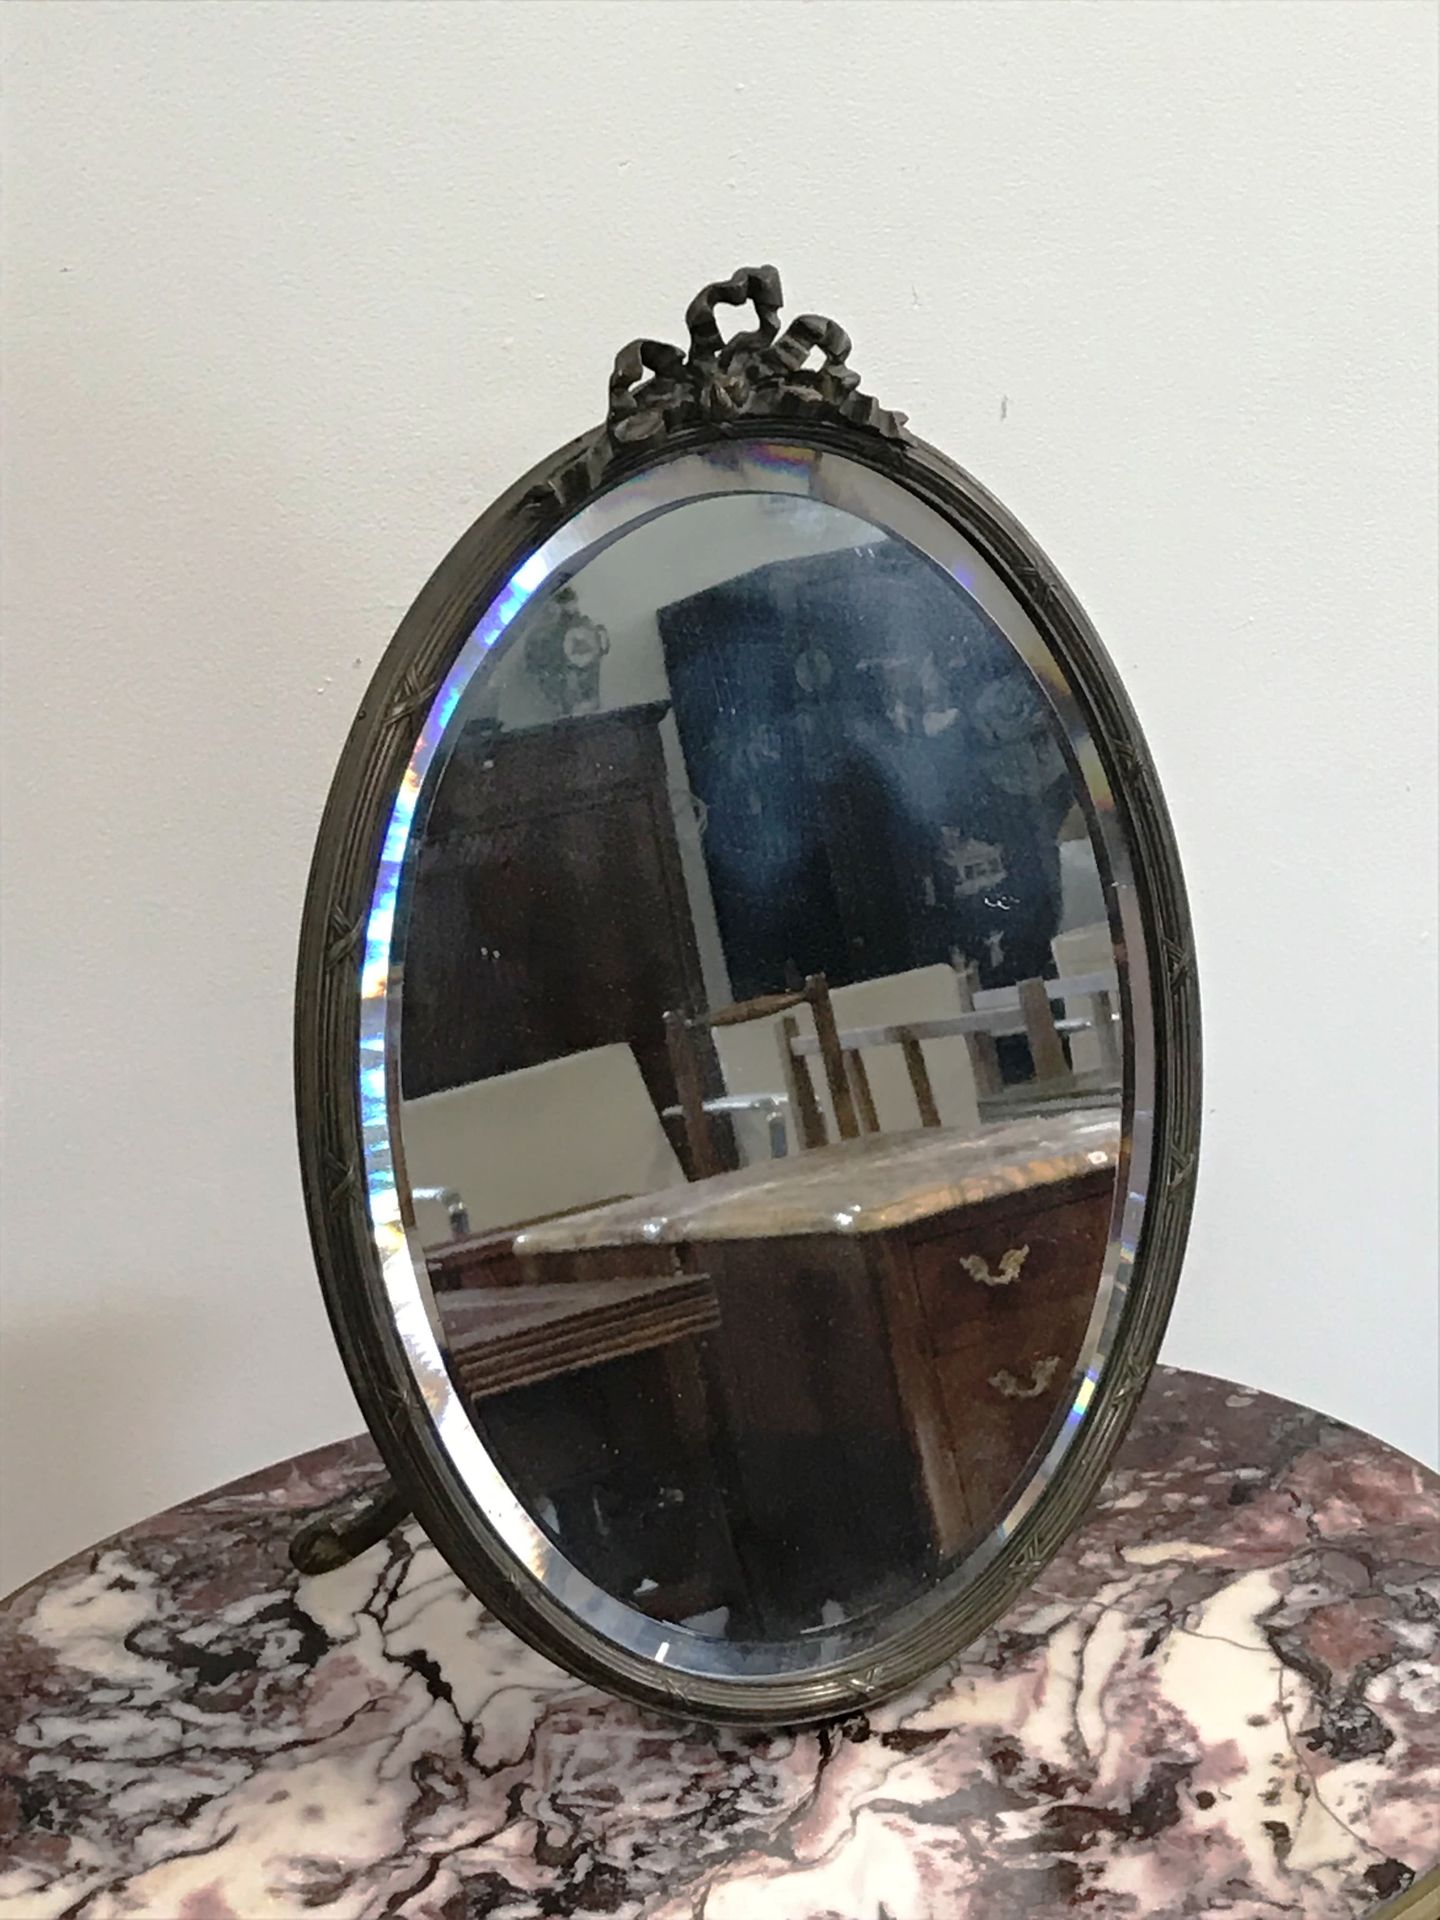 Null 桌子上的镜子

路易十六风格

鎏金铜，上面有一个蝴蝶结

斜面玻璃

高46厘米